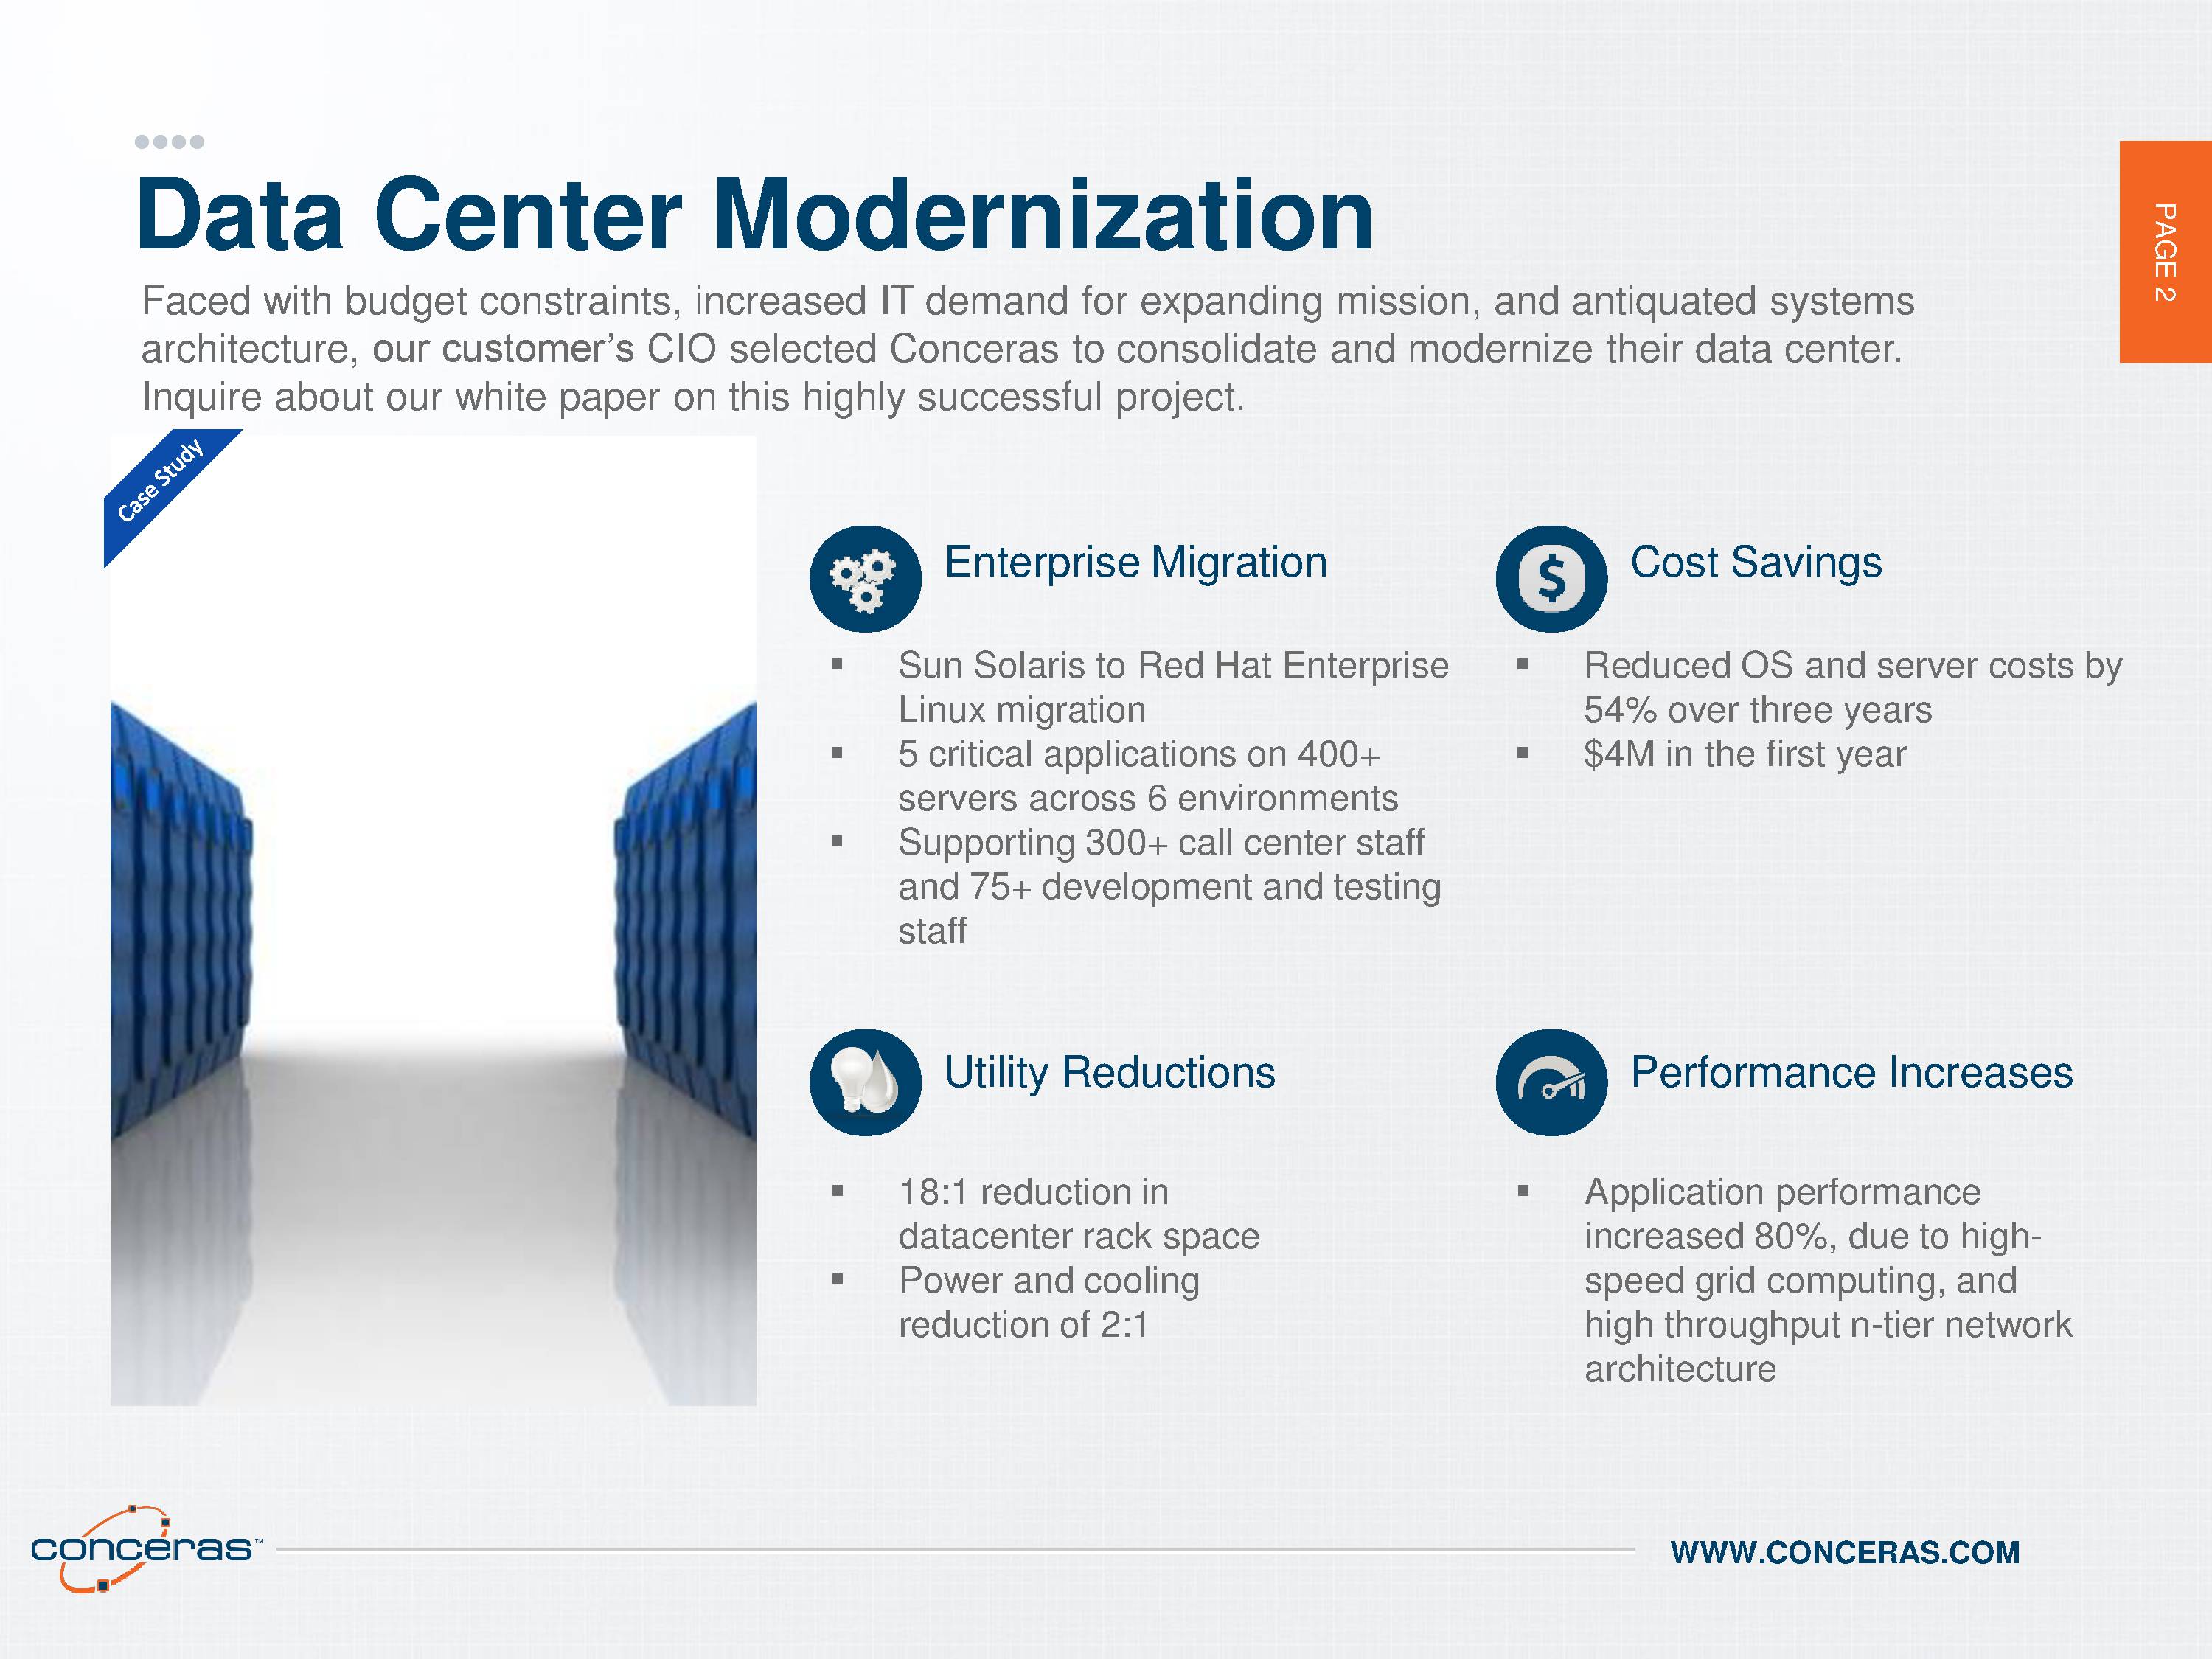 Infogrpahic of Data Center Modernization